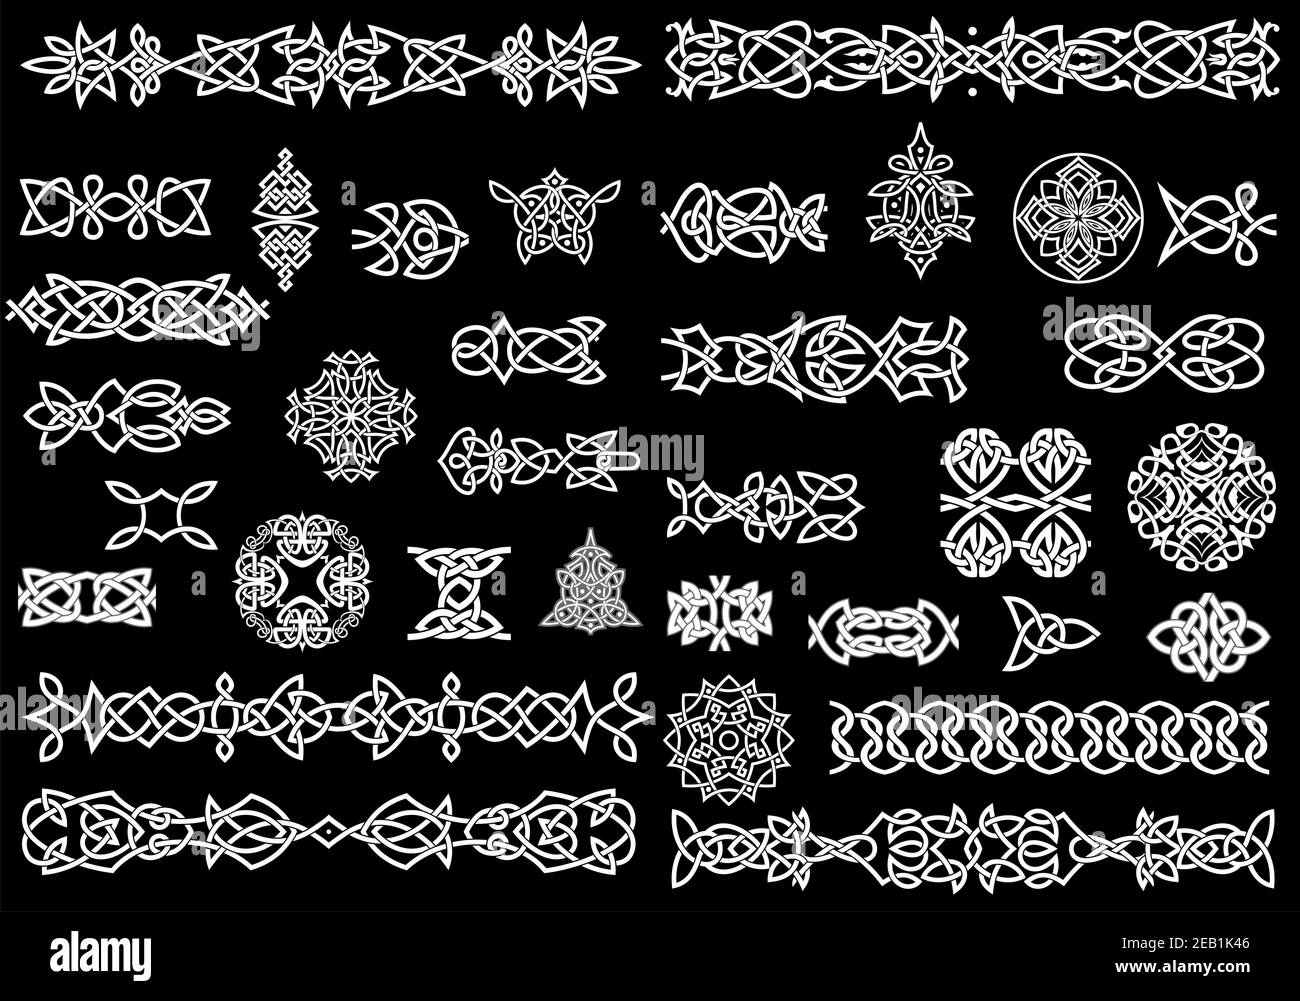 Keltische Ornamente, Knotenmuster und Bordüren im traditionellen mittelalterlichen Stil auf schwarzem Hintergrund für ethnische Verschönerung und Tattoo-Design Stock Vektor